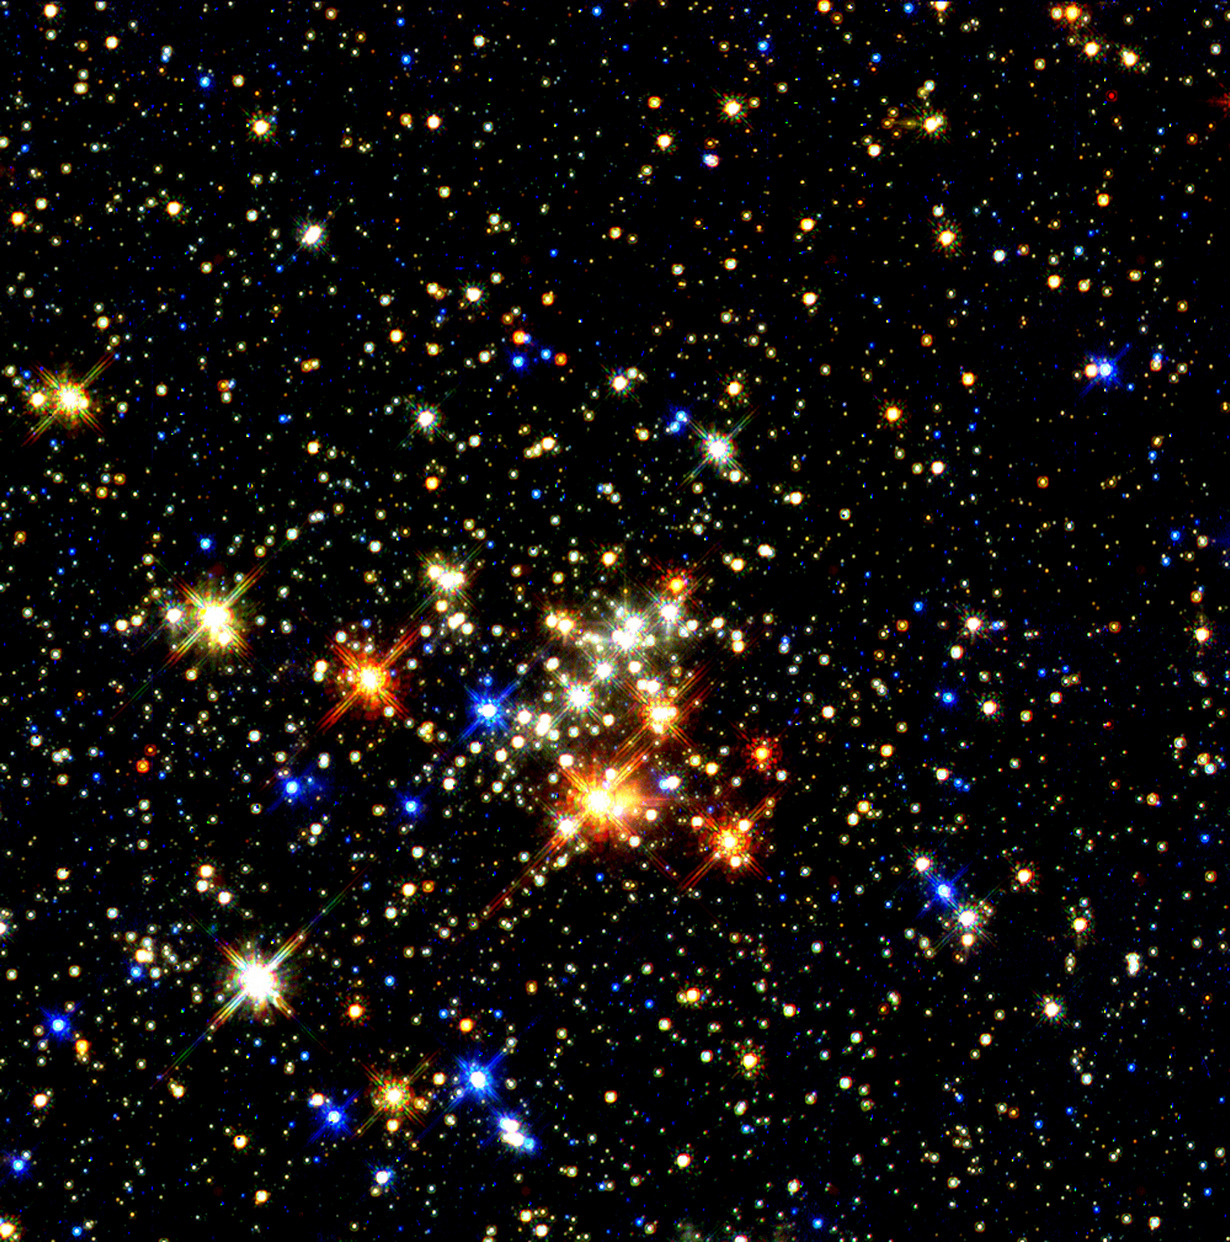 Звёздное скопление «Квинтиплет». Самое отчётливое изображение самого большого звёздного скопления в Млечном Пути. Снимок был сделан космическим телескопом «Хаббл» в 1997 году. (NASA on The Commons)